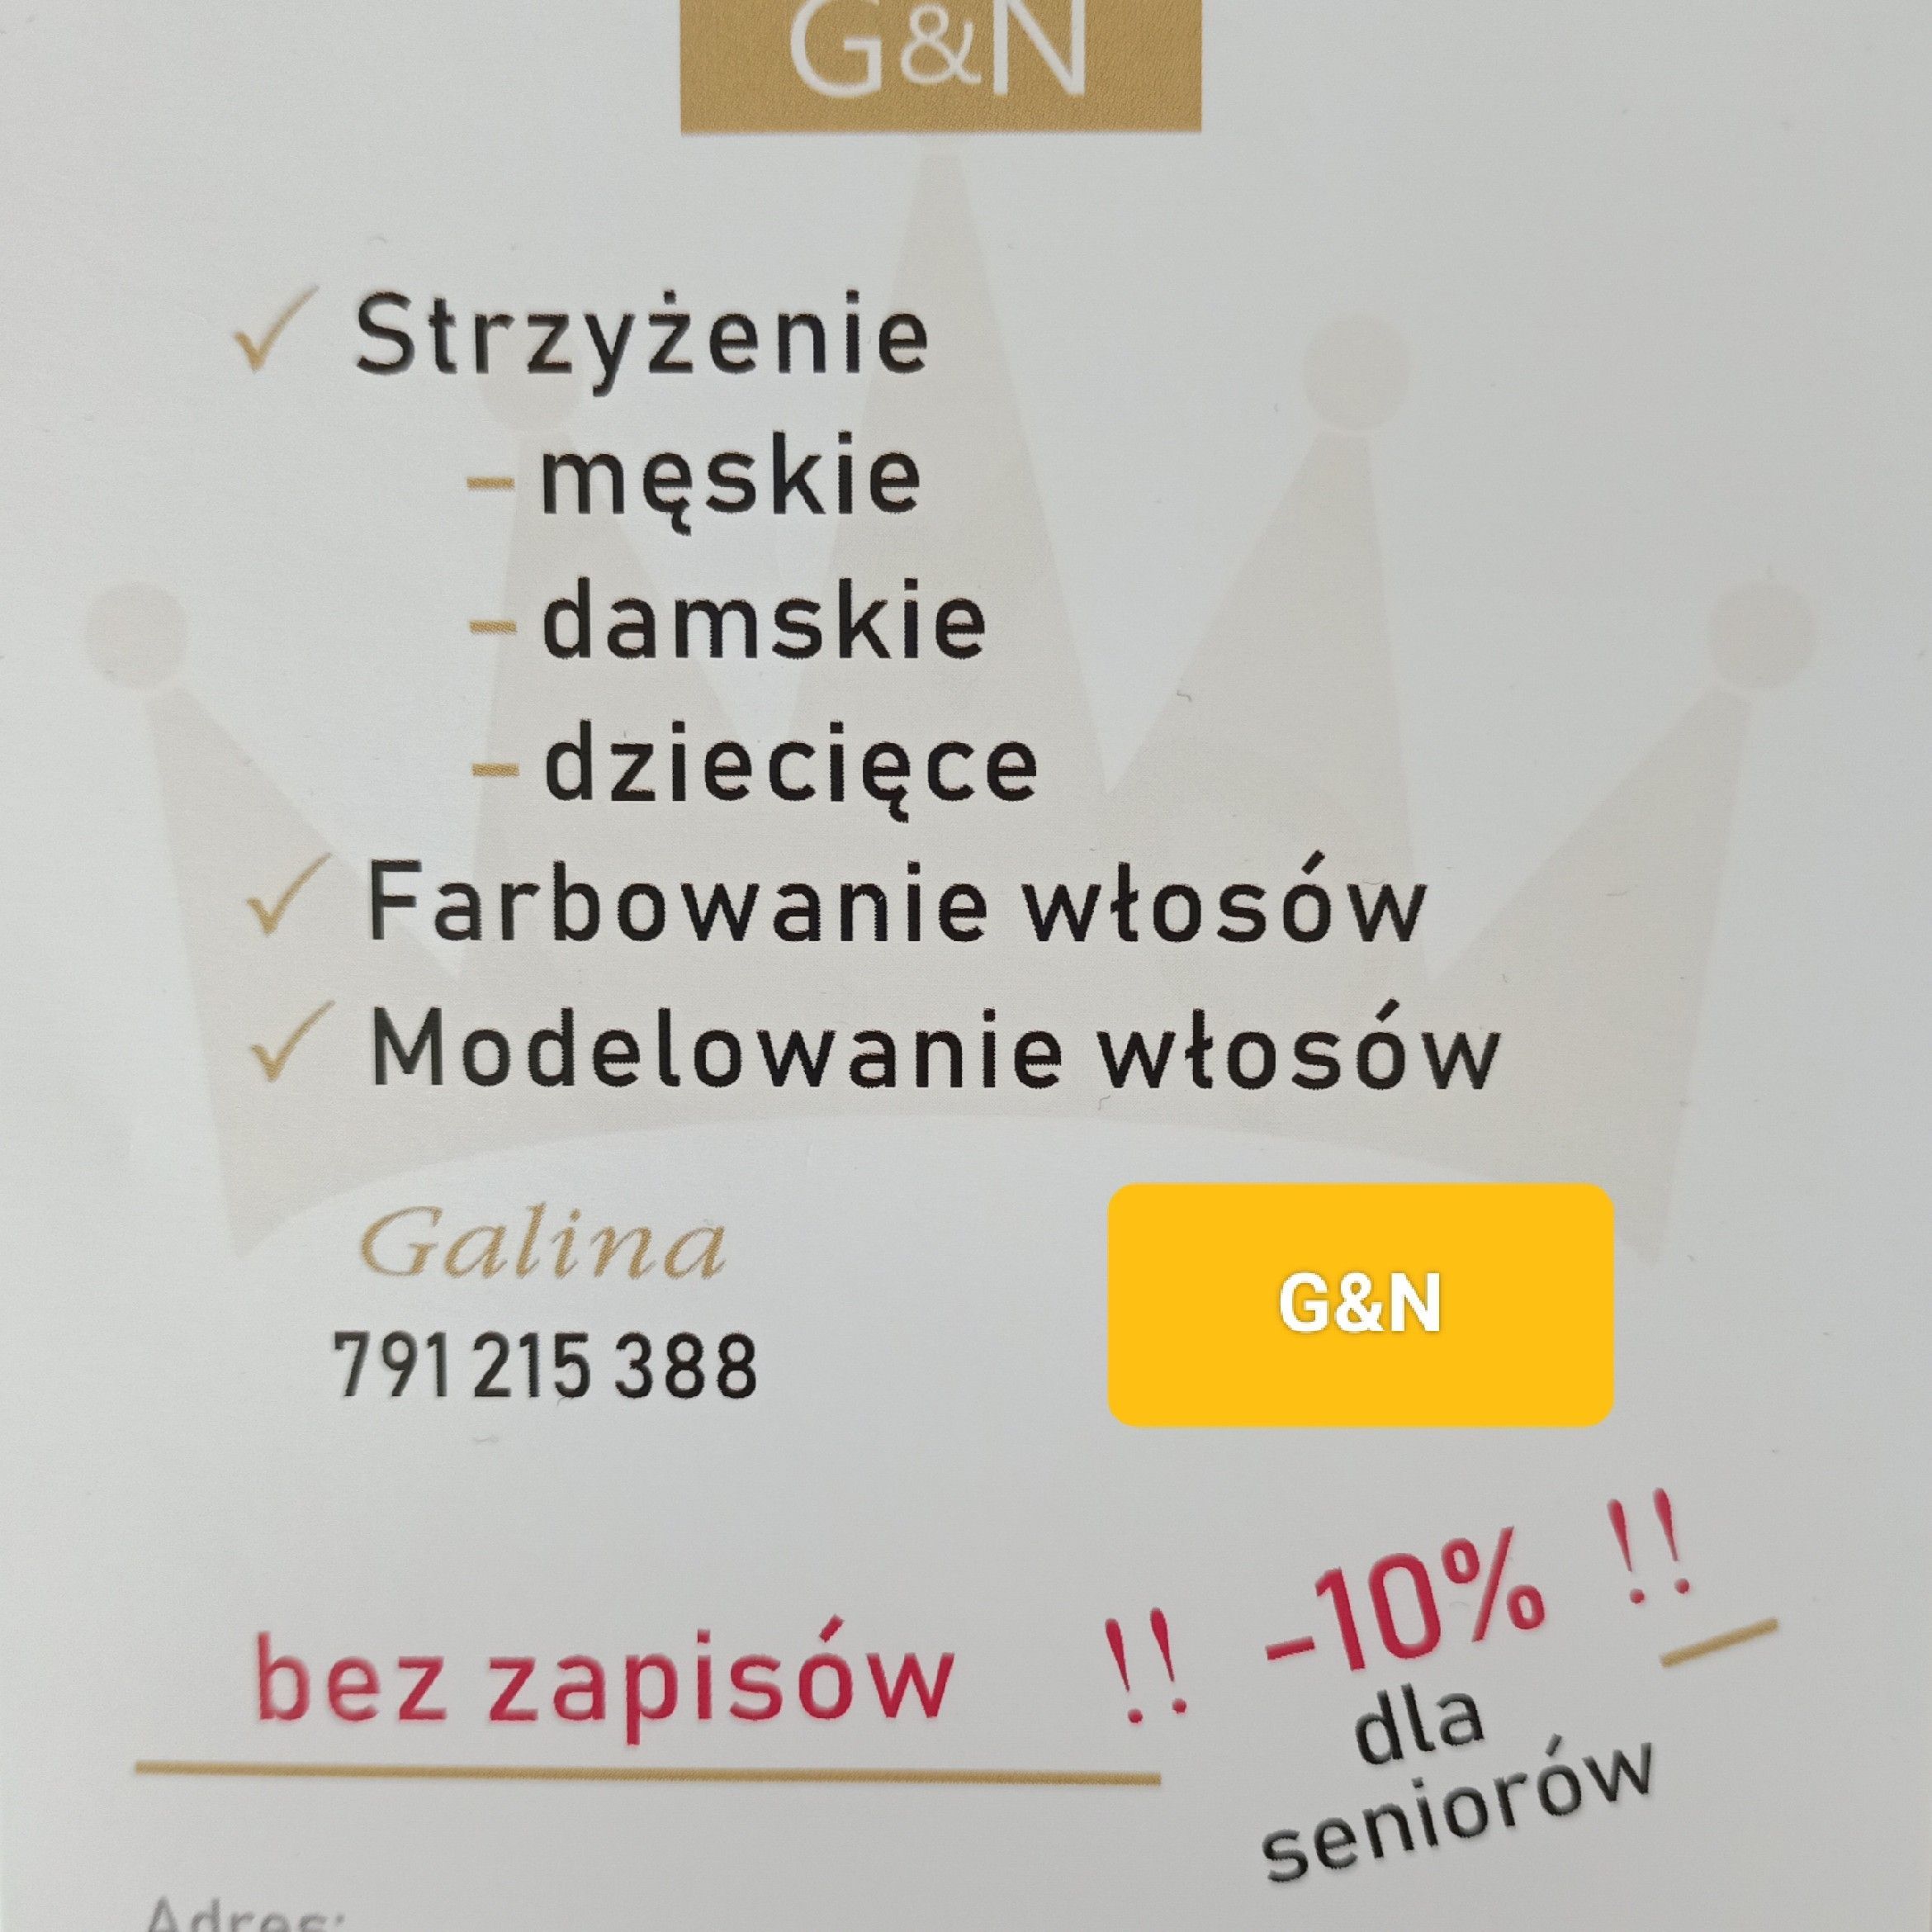 Salon Fryzjerski G&N, Głogowska 128, 60-243, Poznań, Grunwald